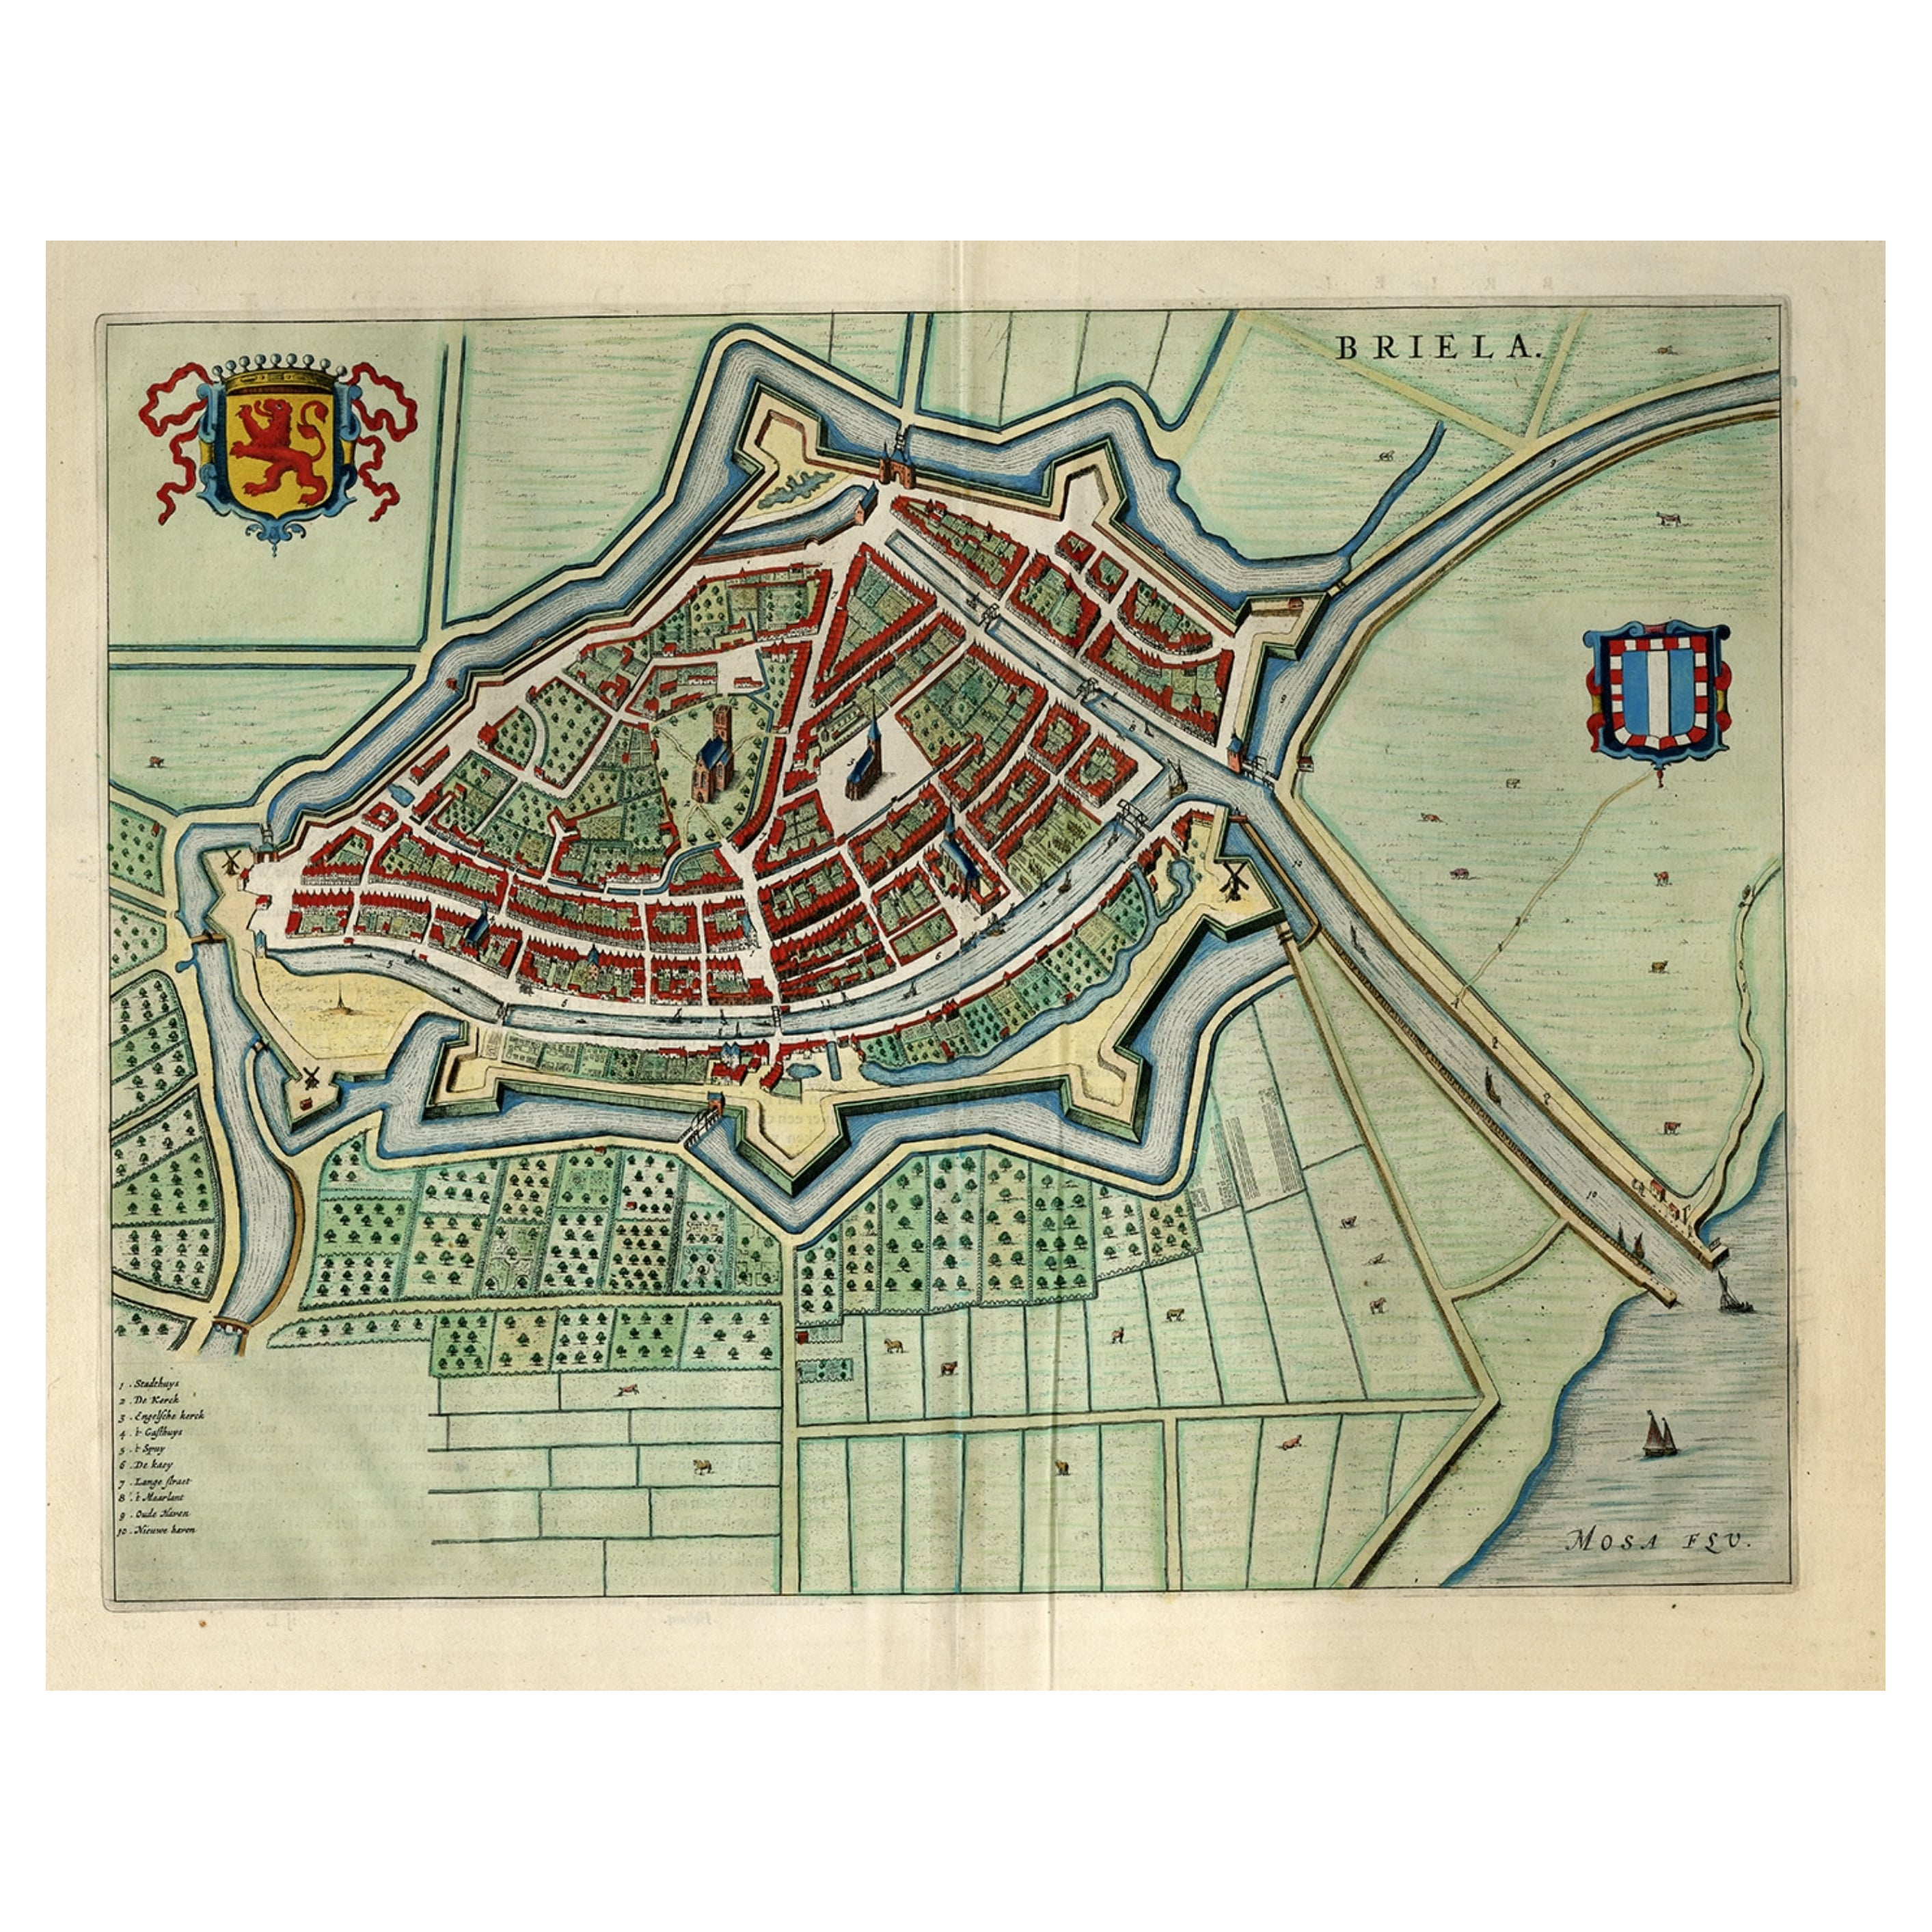 Blaeu in den Niederlanden, 1649, antiker Vogelaugenausblick-Plakat von Brielle